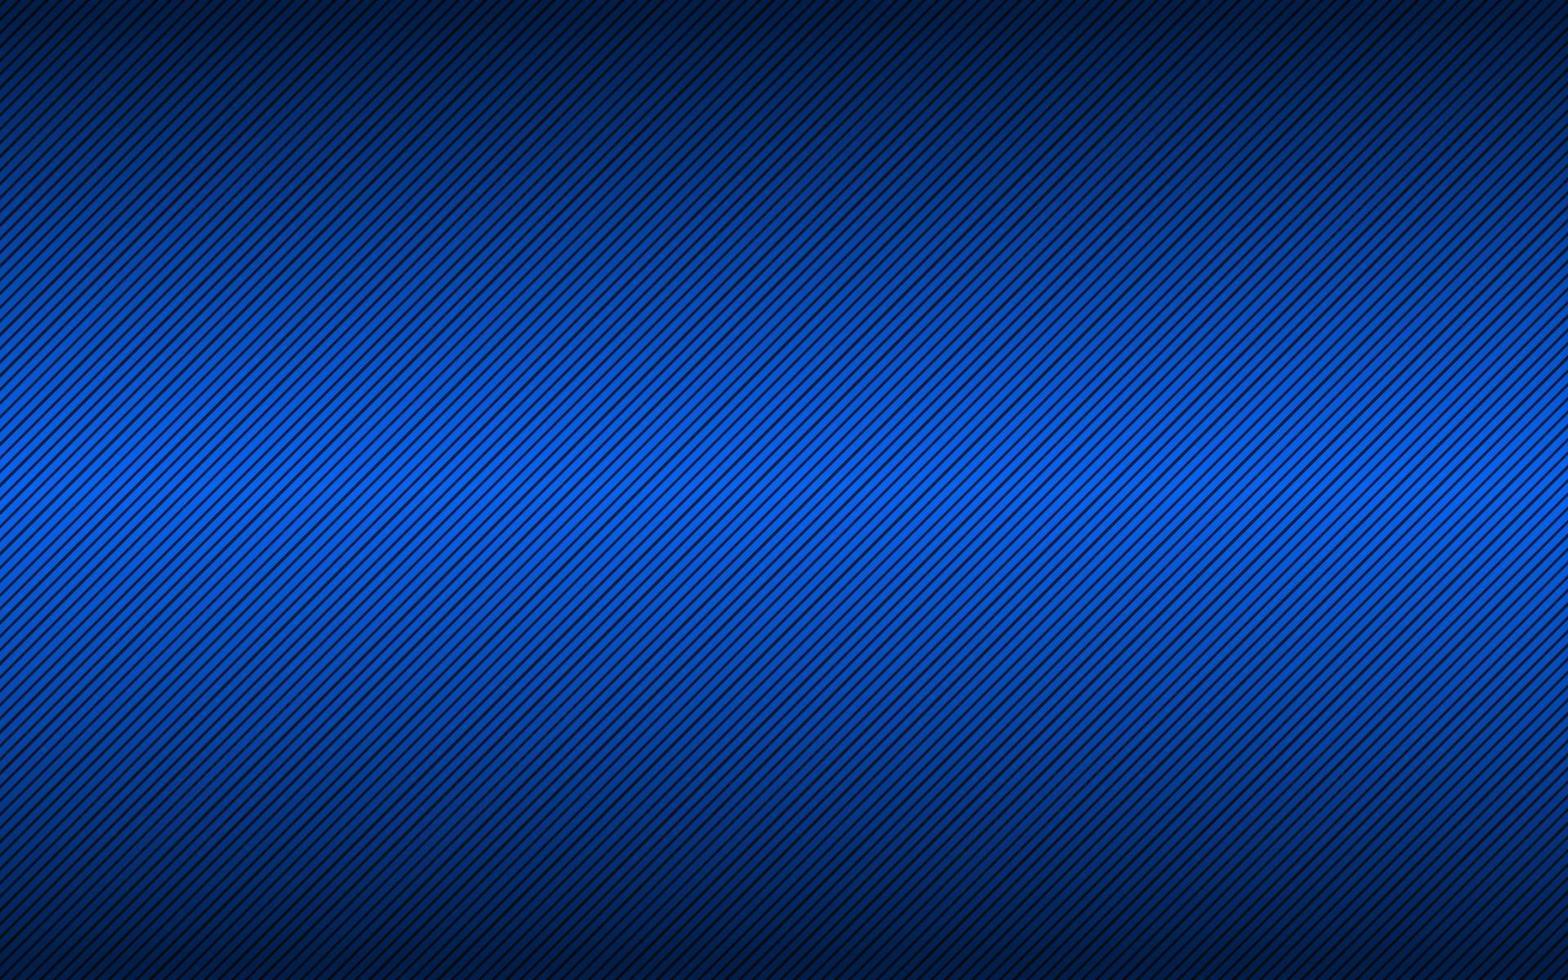 abstact fondo negro y azul brillante con líneas diagonales. ilustración vectorial simple vector